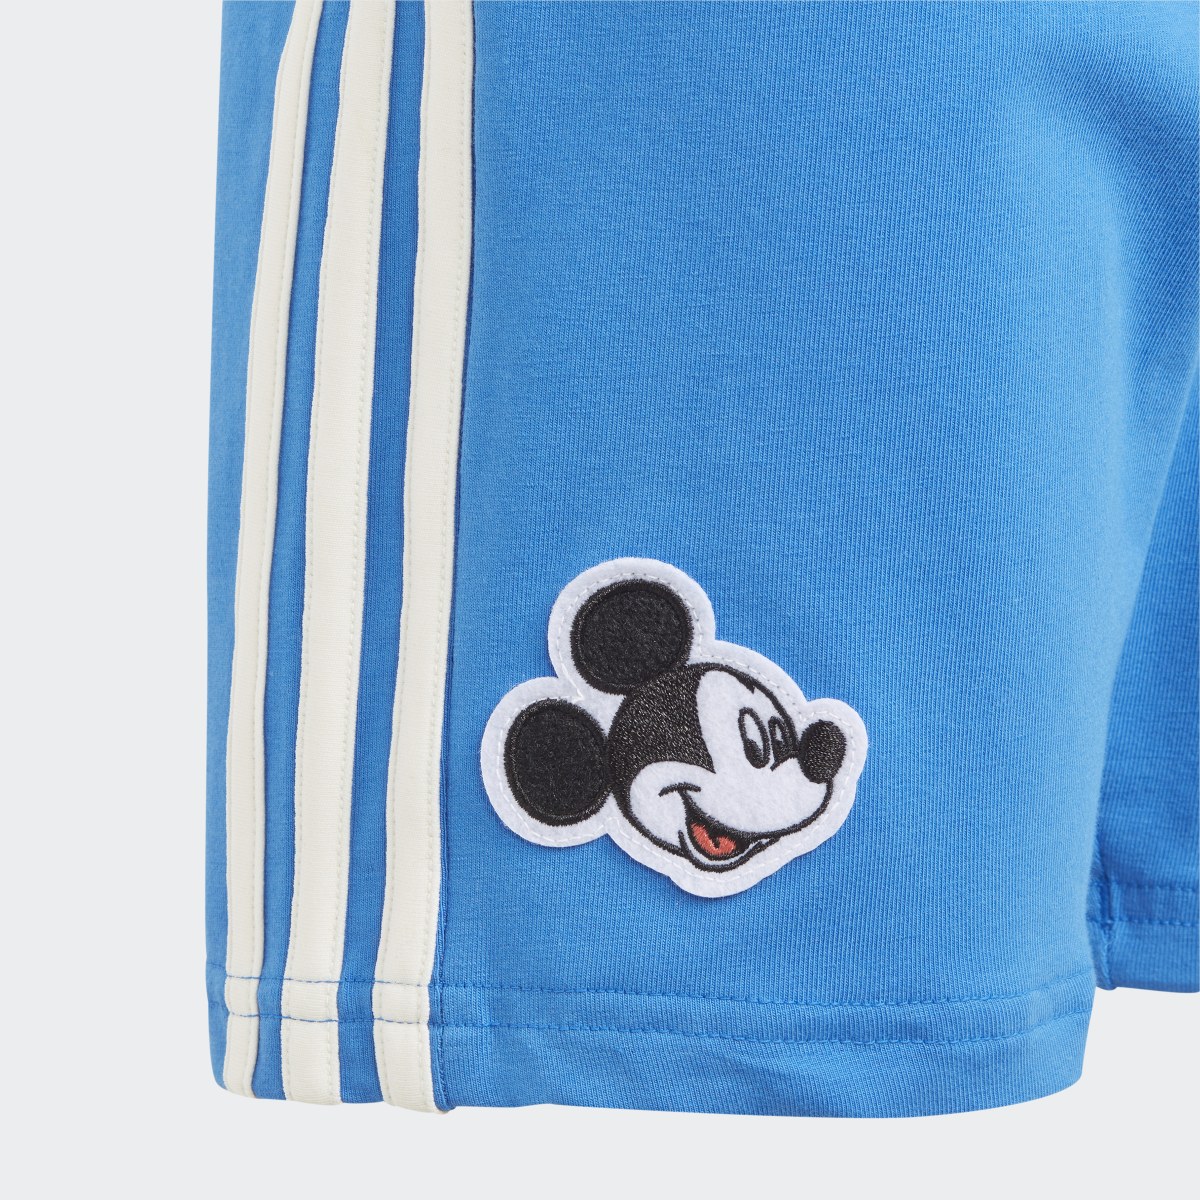 Adidas Ensemble short et t-shirt Mickey Mouse adidas x Disney. 8